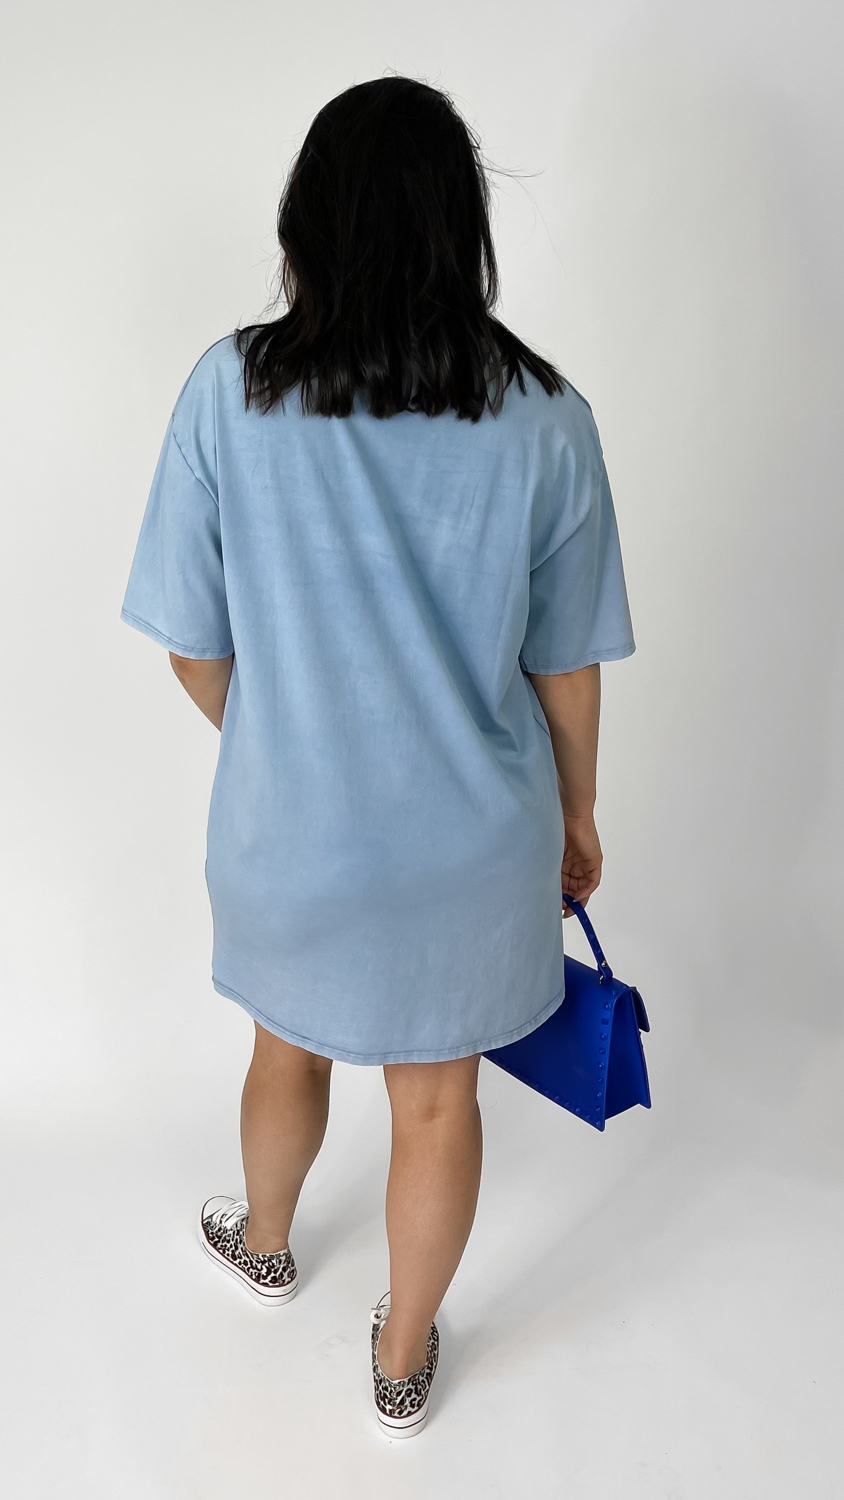 Superweiches Oversized T-Shirt Kleid, Miina Fashion Onlineshop